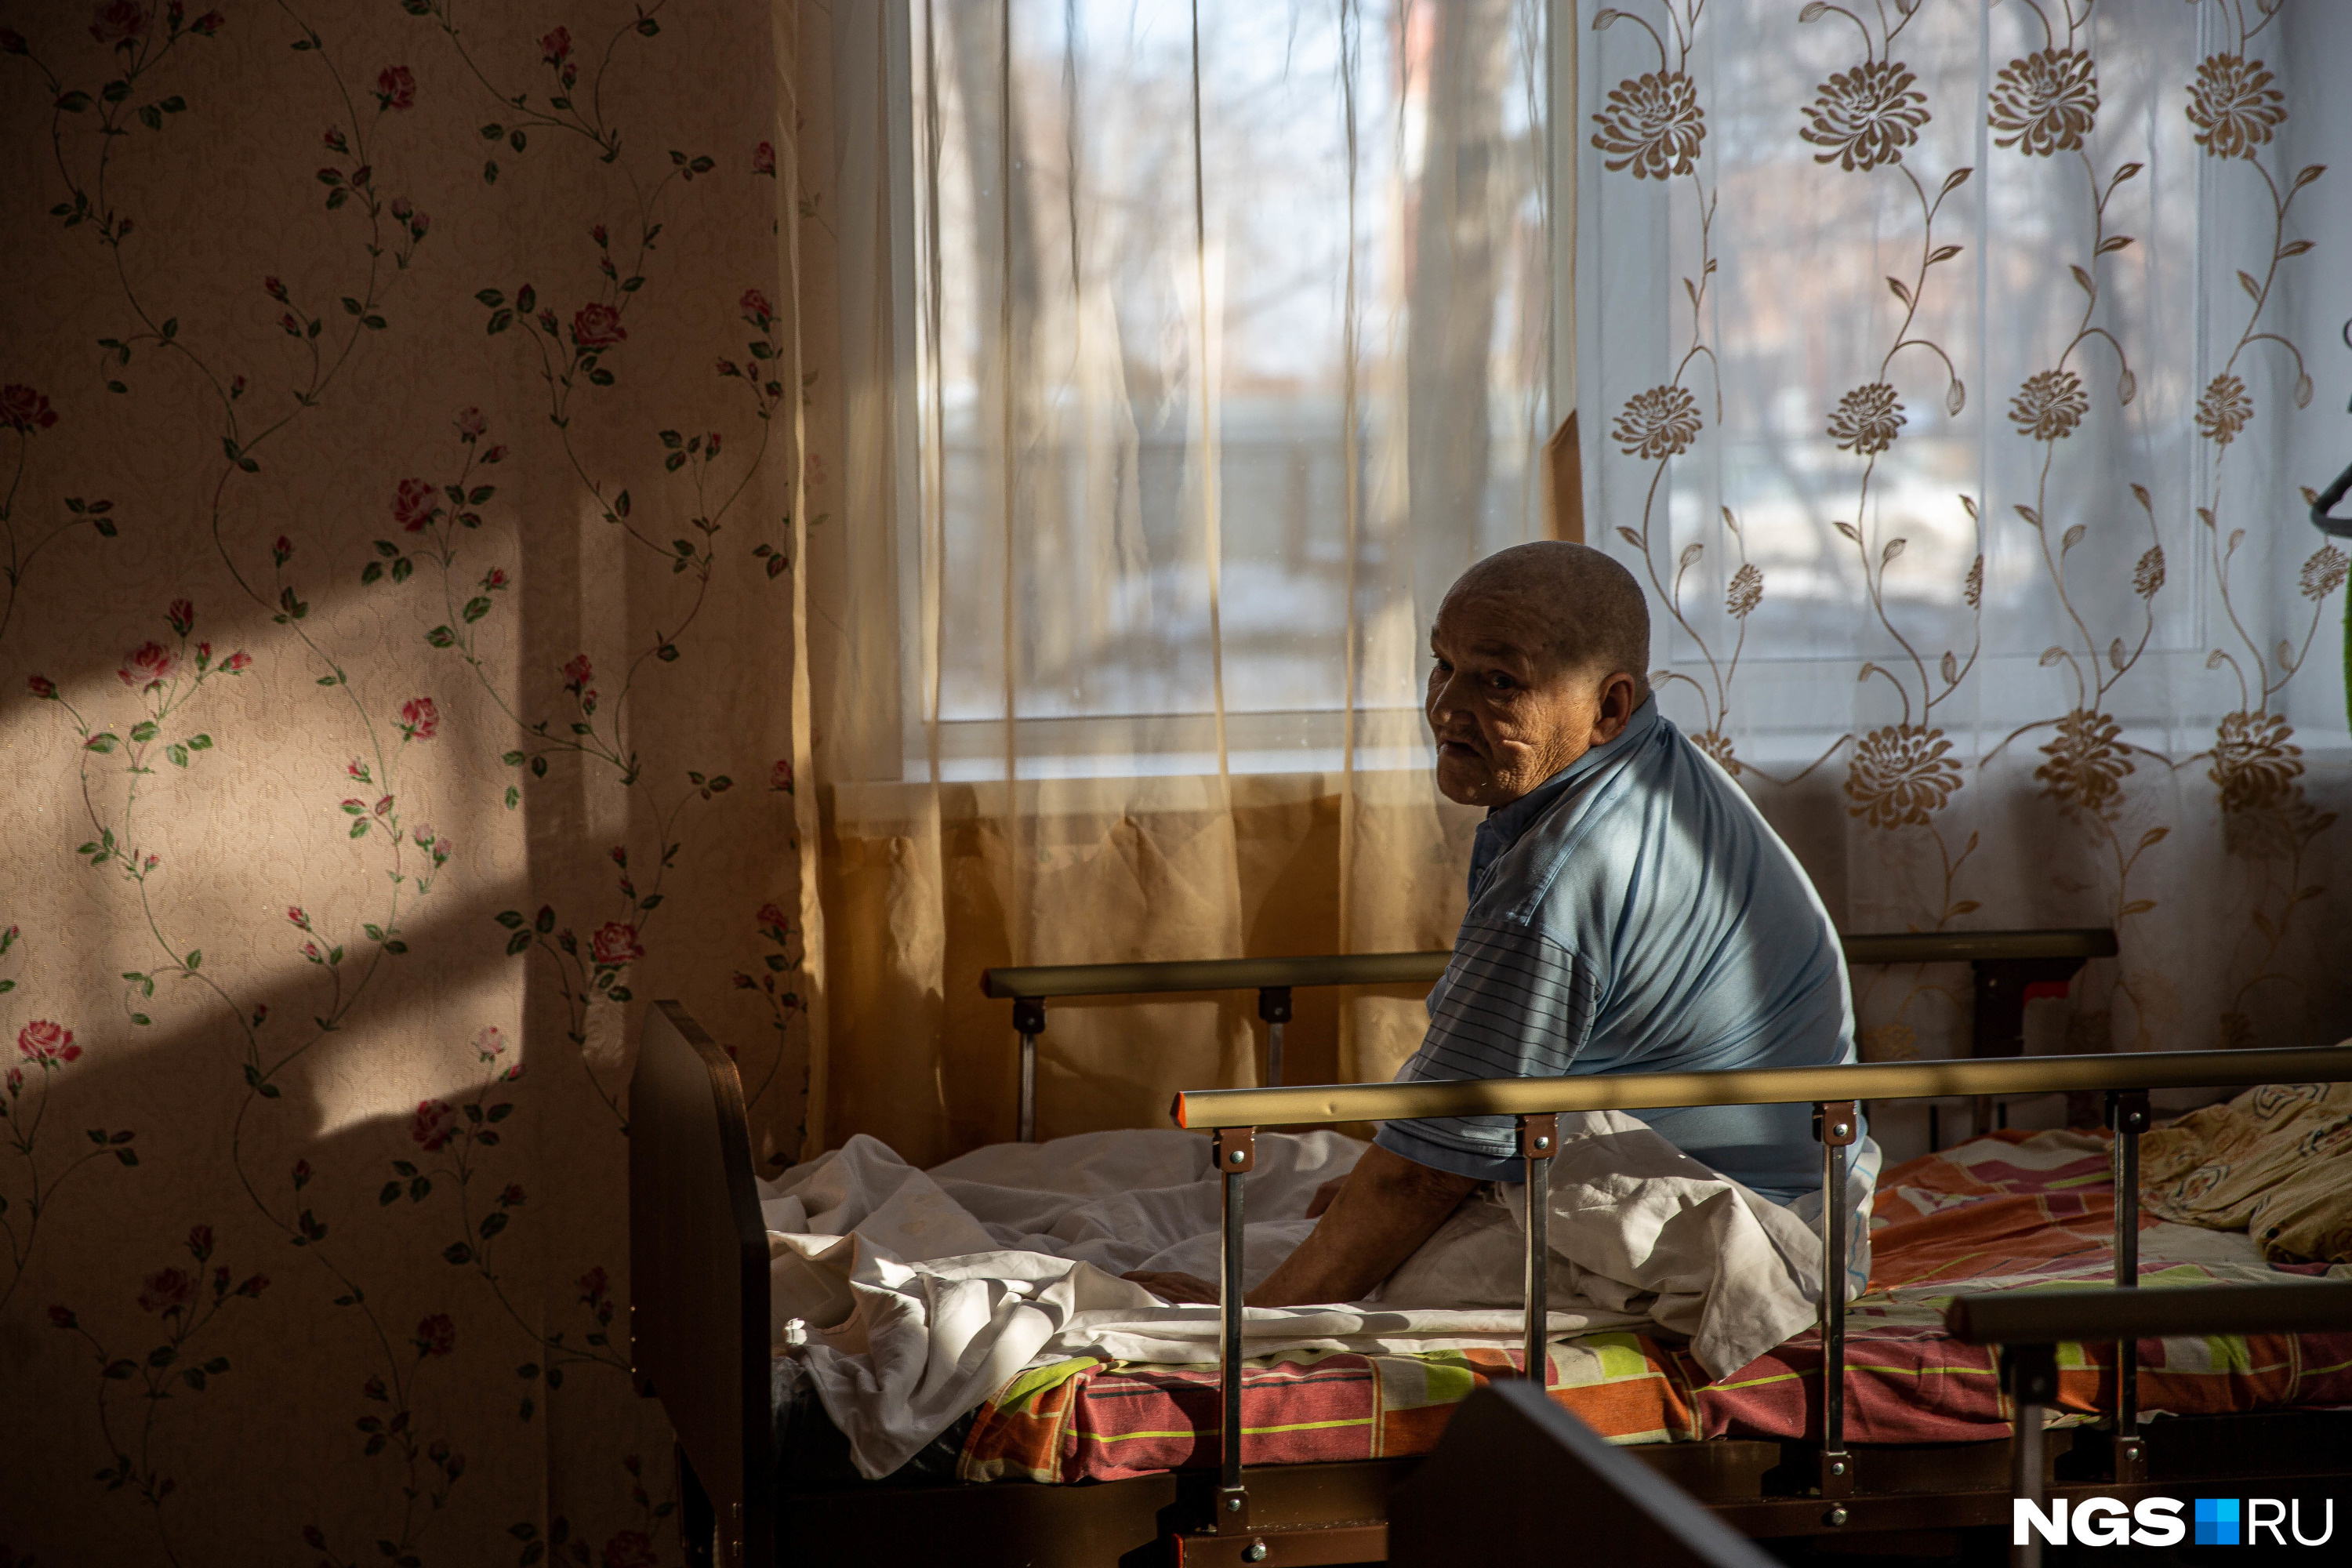 Дом бездомных: репортаж из дома в Новосибирске, где живут больные люди, которые остались одни - 3 ноября 2020 - НГС